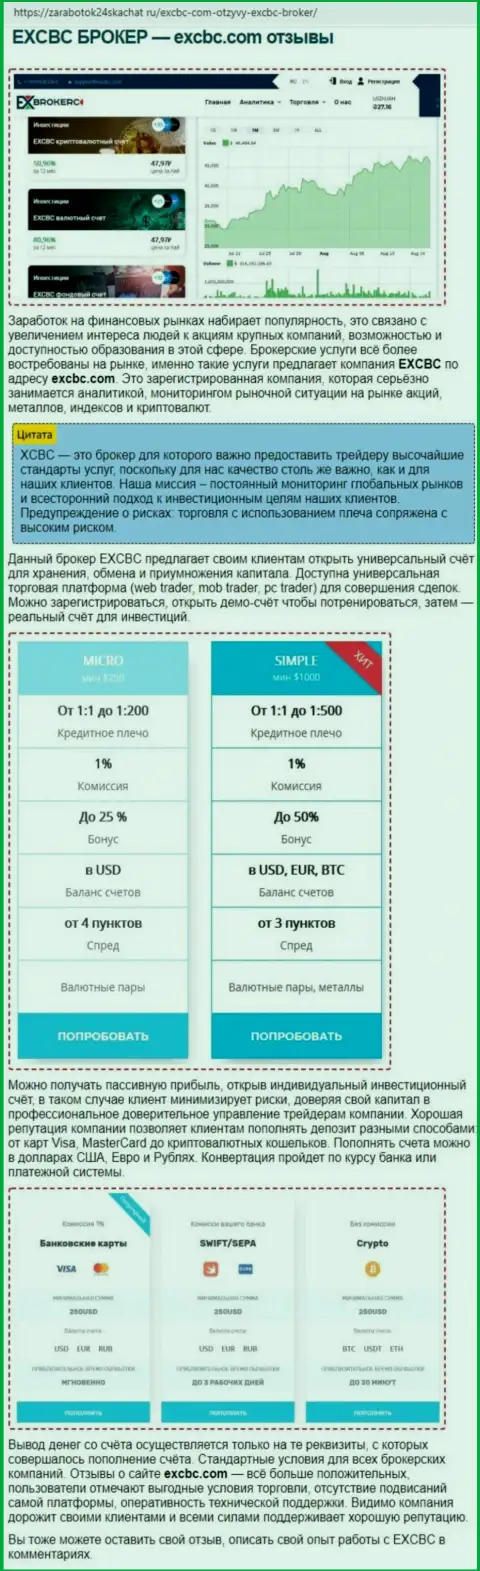 Данные о ФОРЕКС организации ЕХБрокерс в публикации на интернет-ресурсе Zarabotok24Skachat Ru